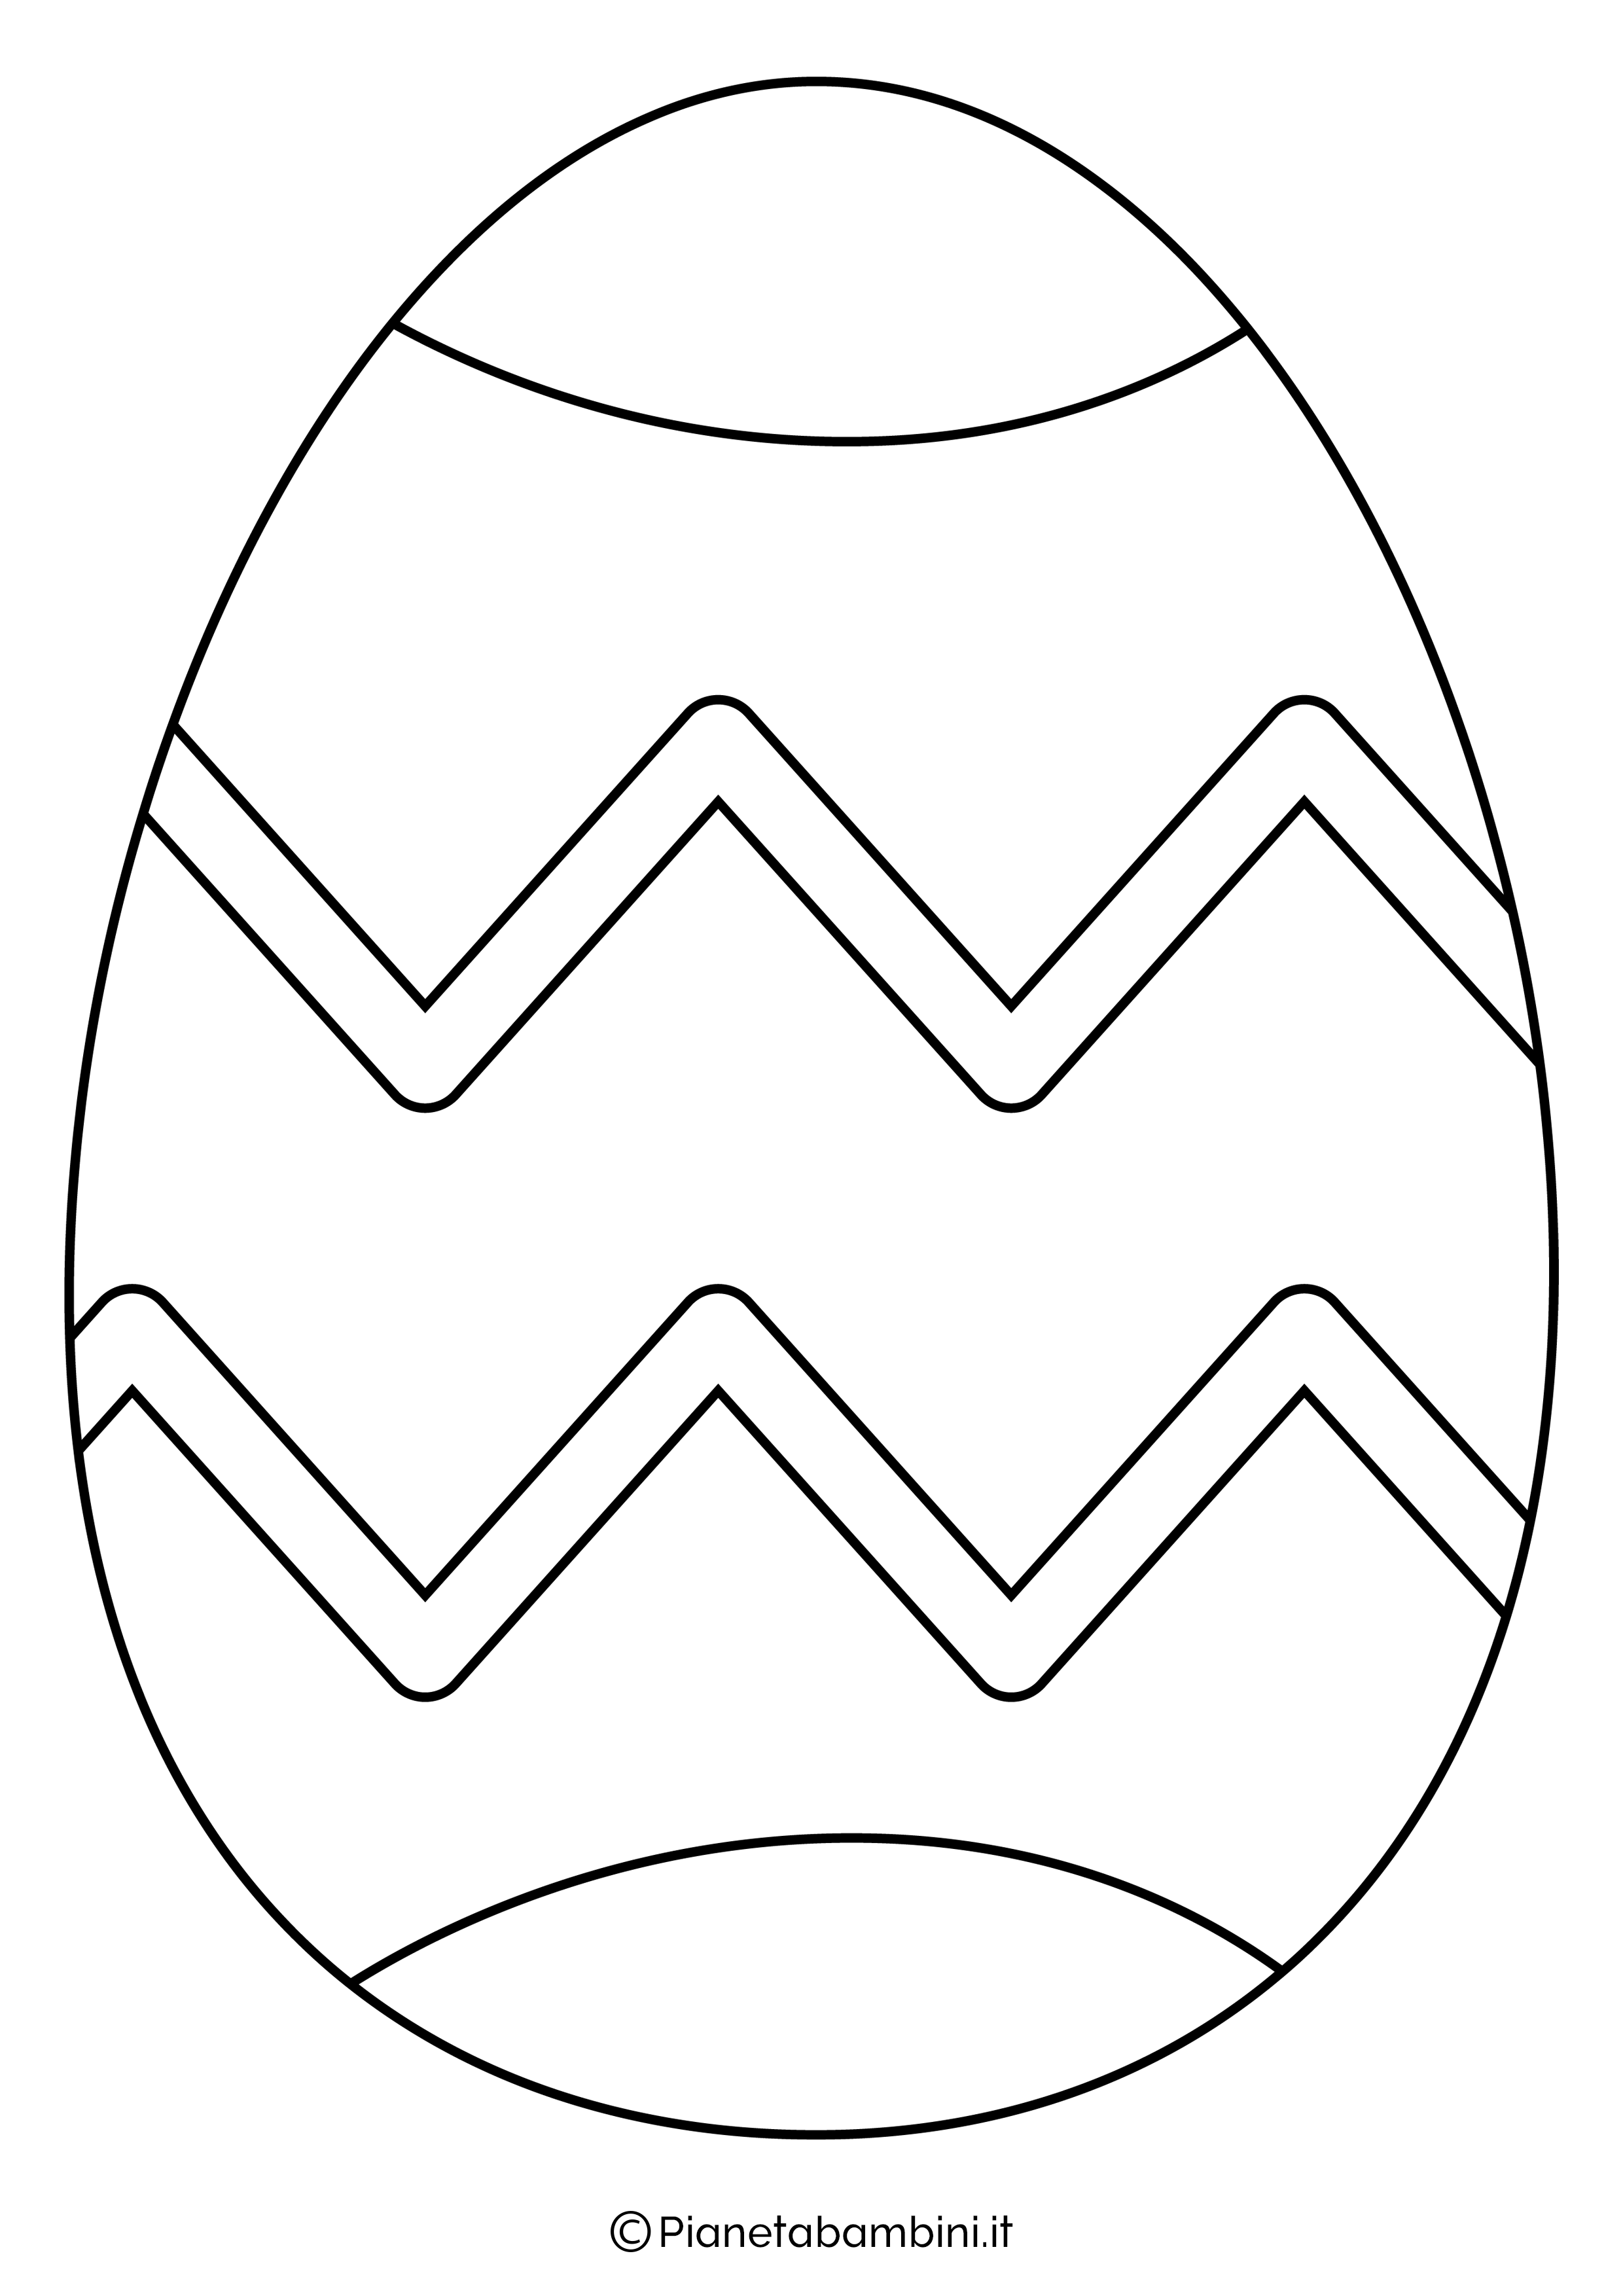 Disegno uovo di pasqua facile da colorare 3